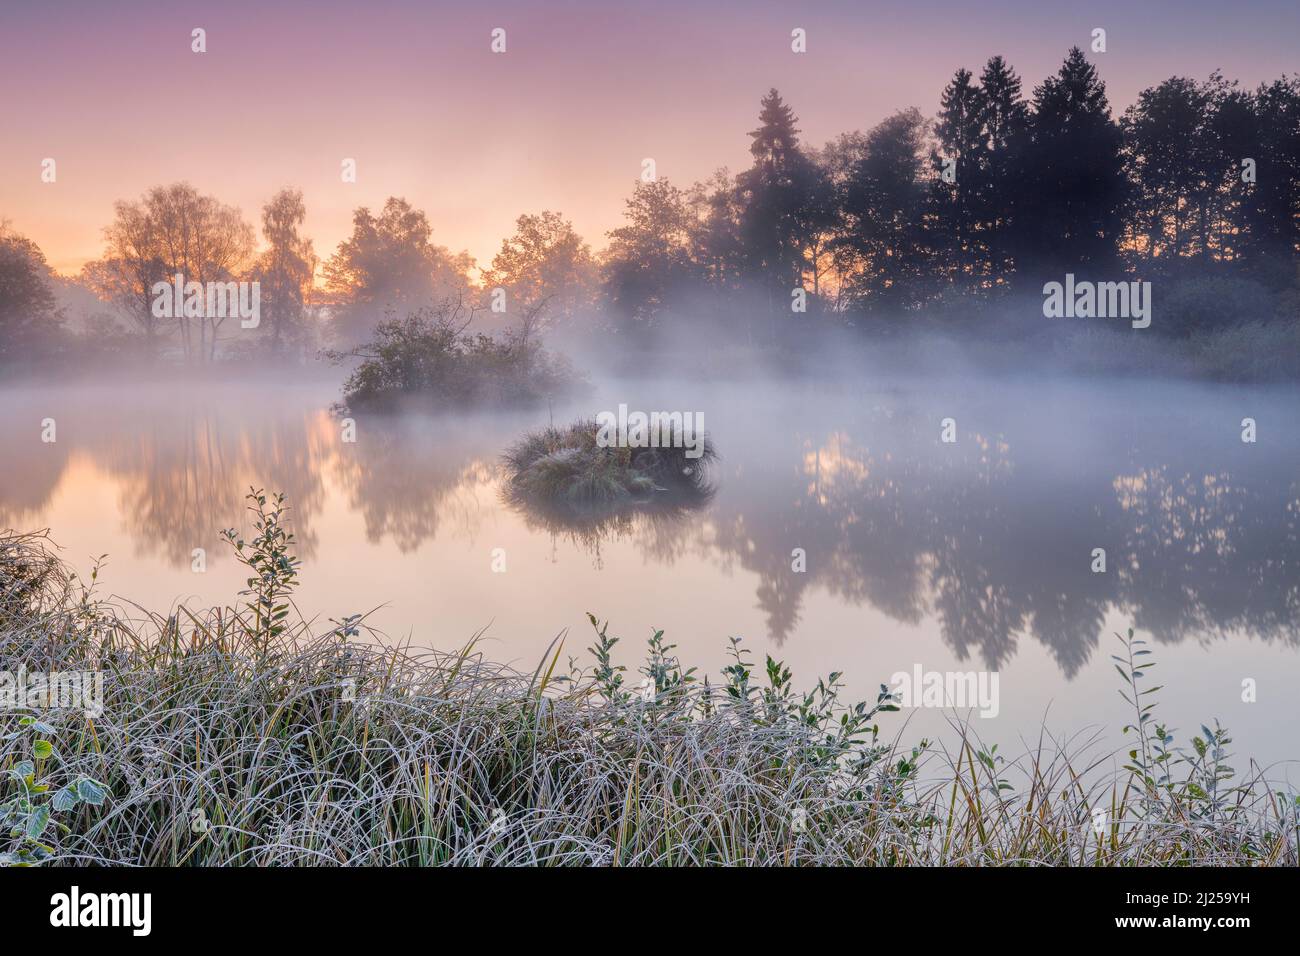 Ambiance matinale automnale à l'étang dans la réserve naturelle Wildert à Illna. Le givre recouvre la végétation au premier plan ainsi que sur les îles et les wafts de brume survolant l'eau, canton de Zurich, Suisse Banque D'Images